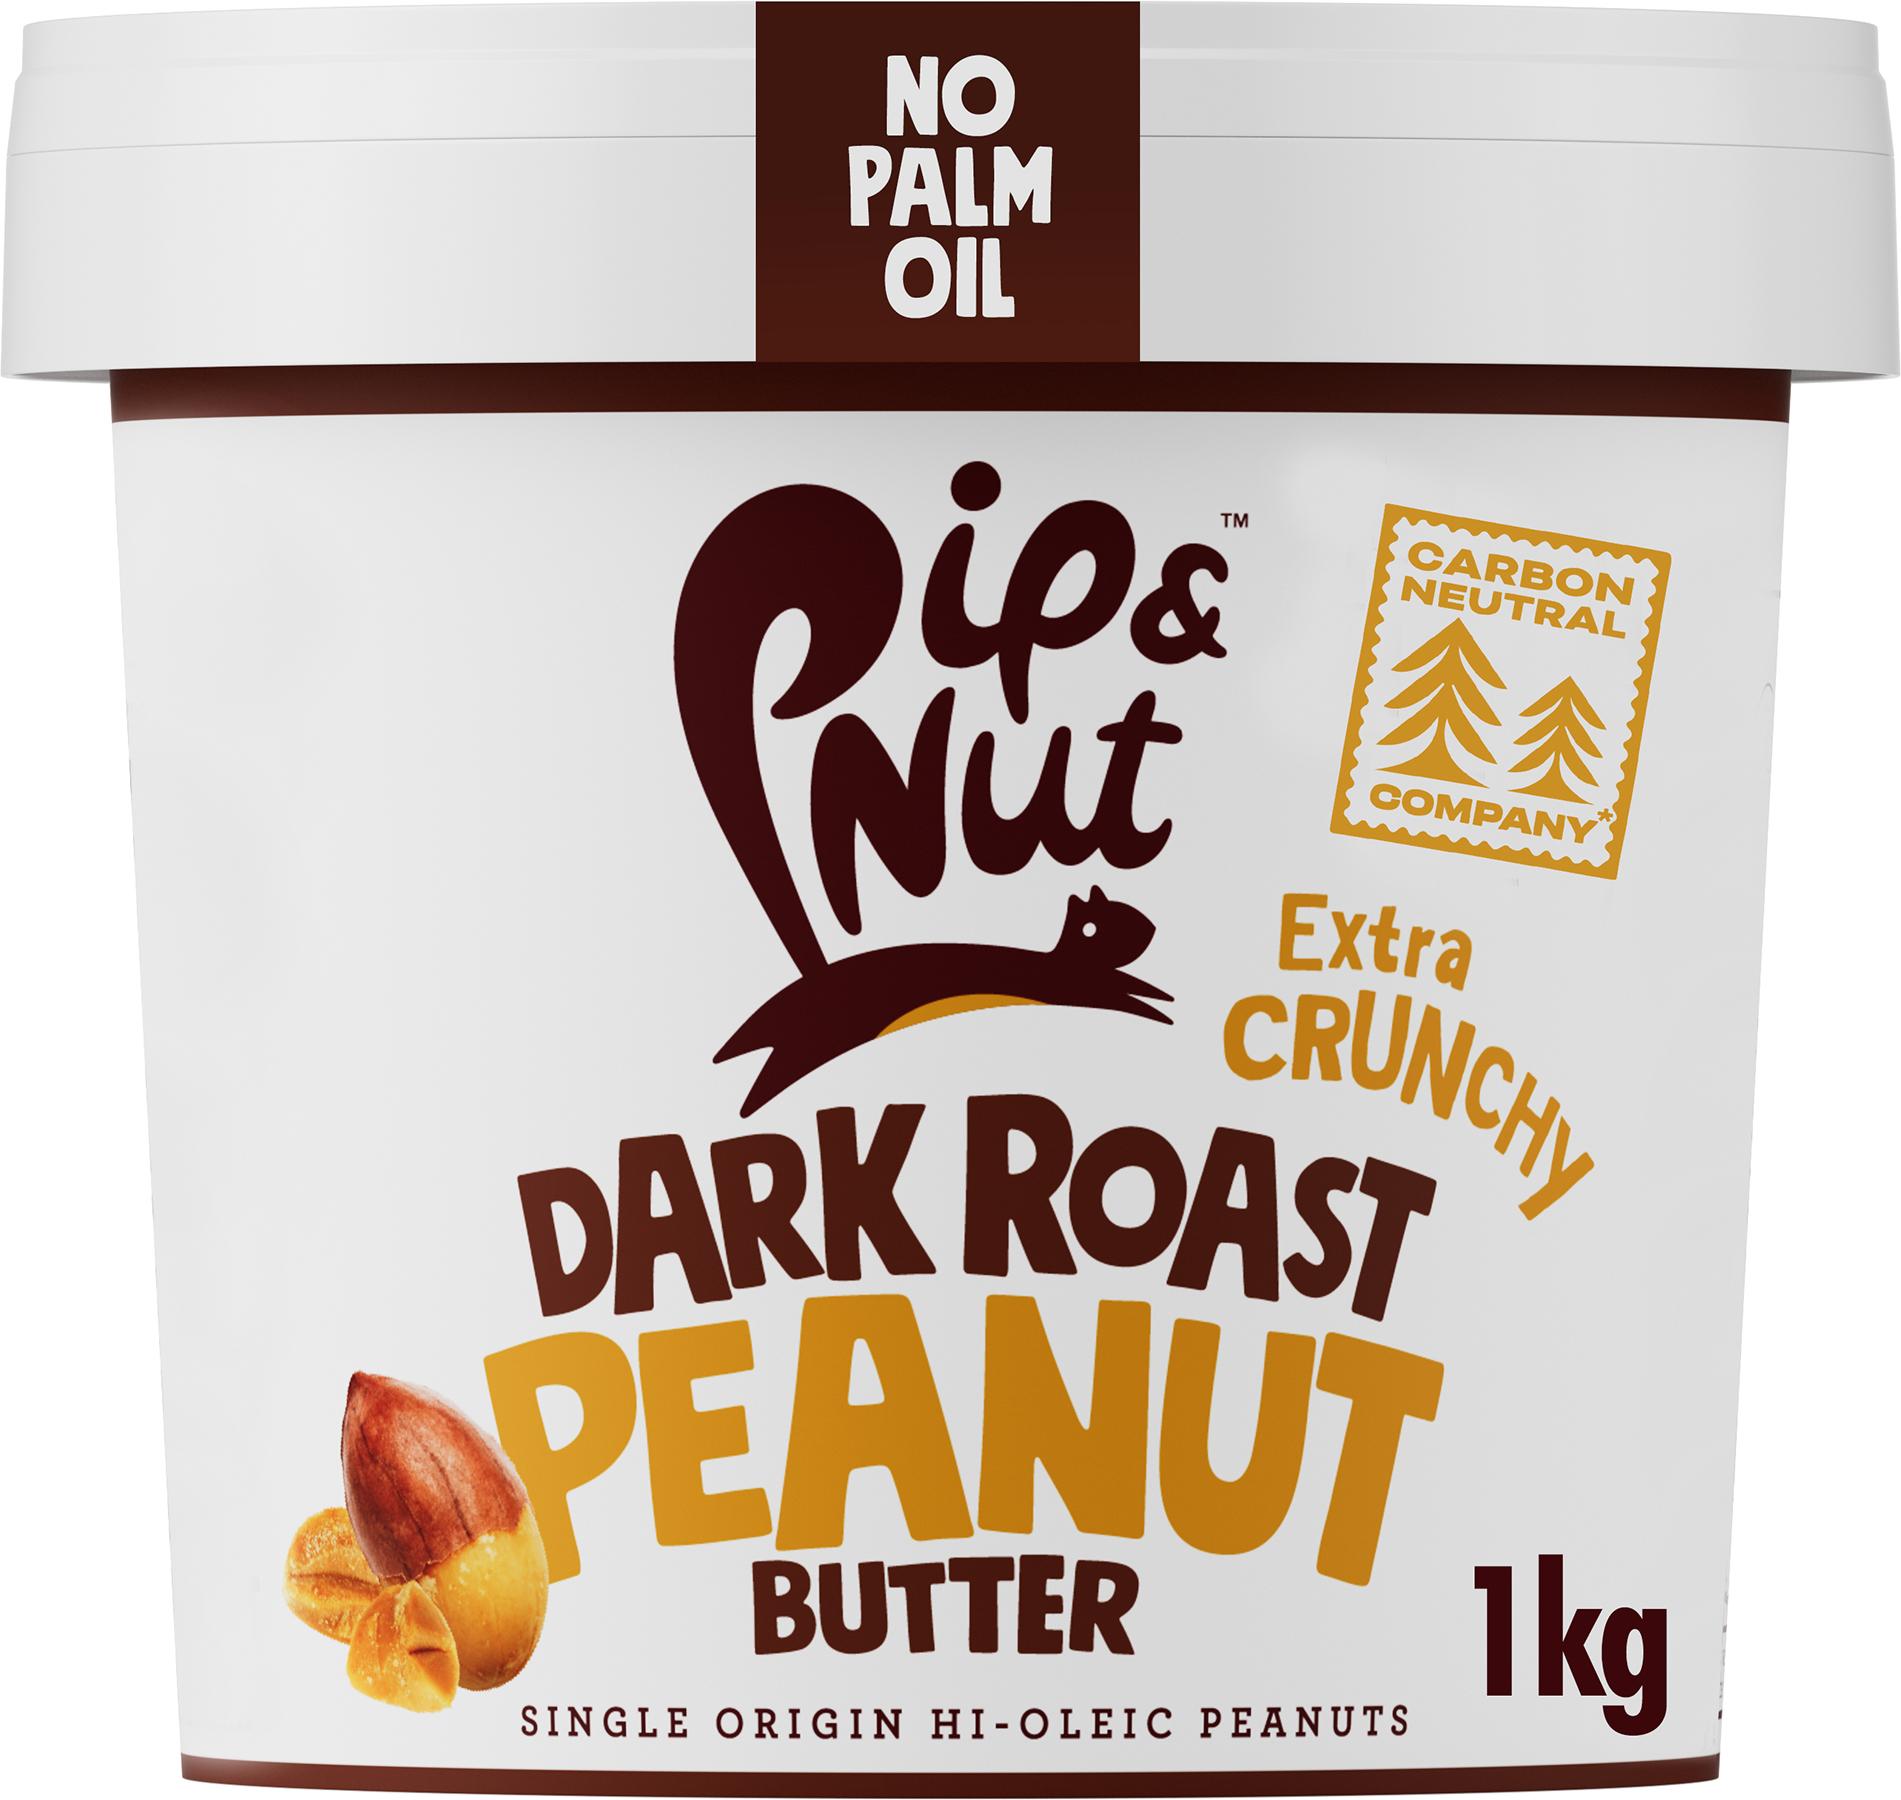 PipandNut Ultimate Crunch Dark Roast Peanut Butter